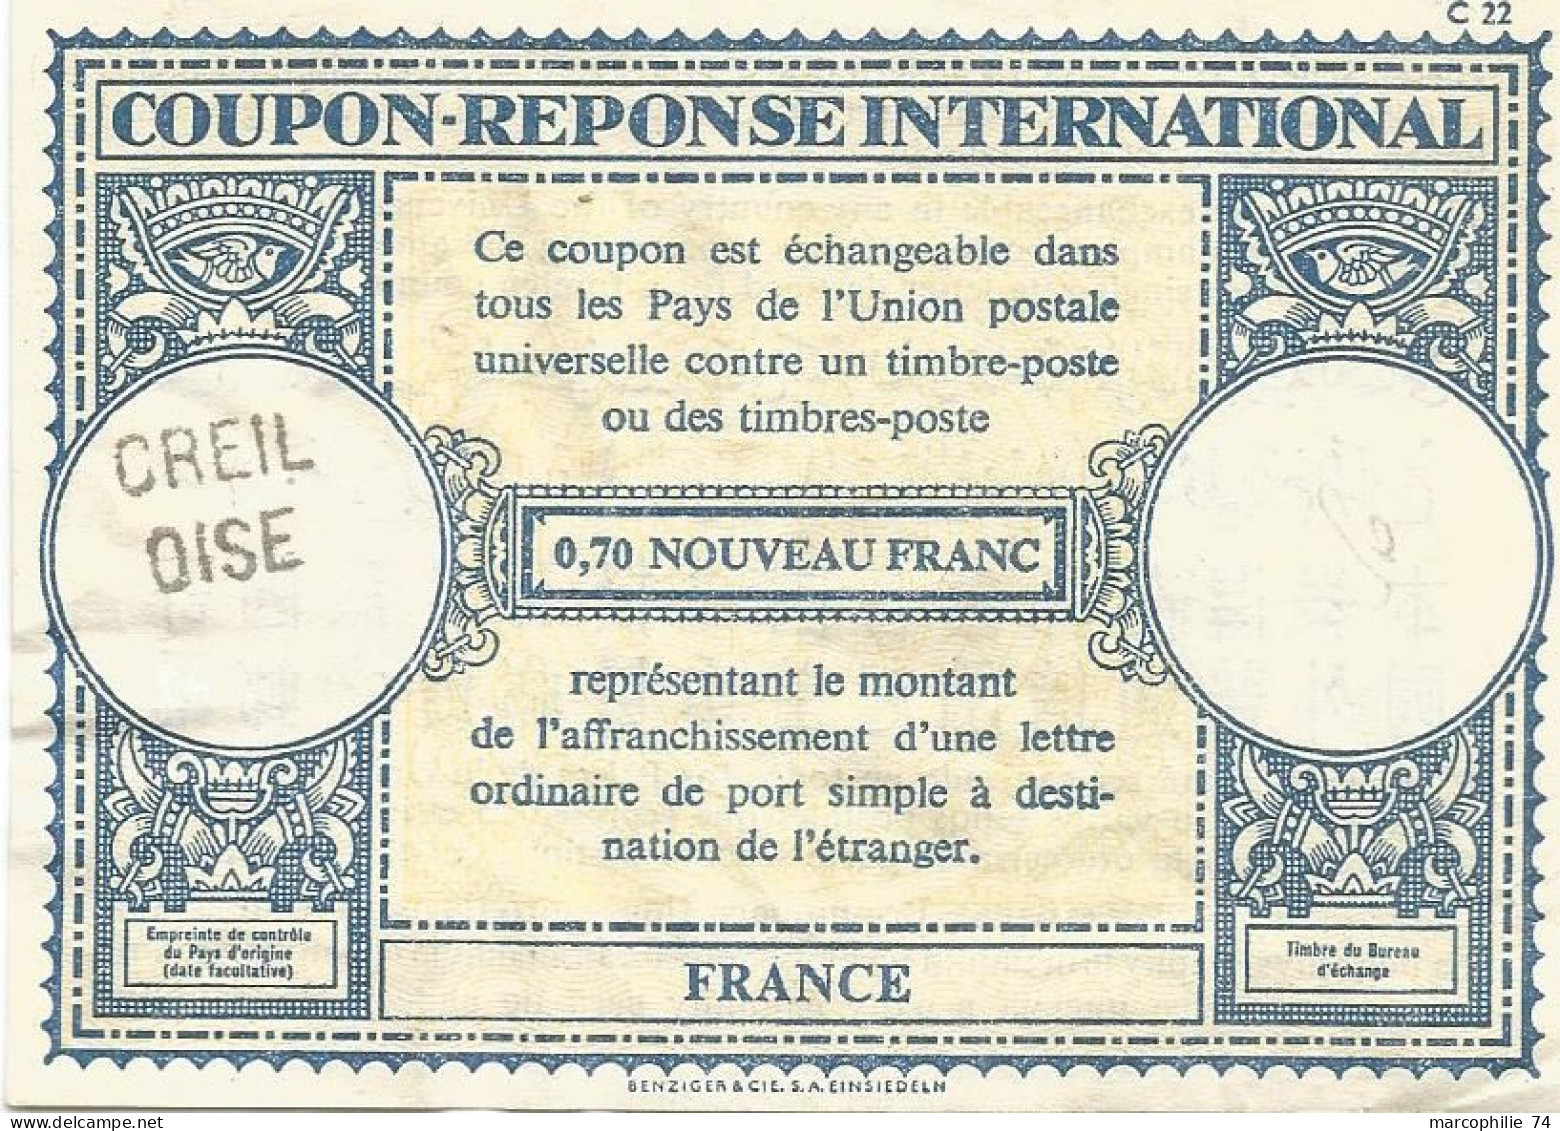 COUPON REPONSE INTERNATIONAL FRANCE 0.70 NOUVEAU FRANC GRIFFE CREIL OISE - Buoni Risposte